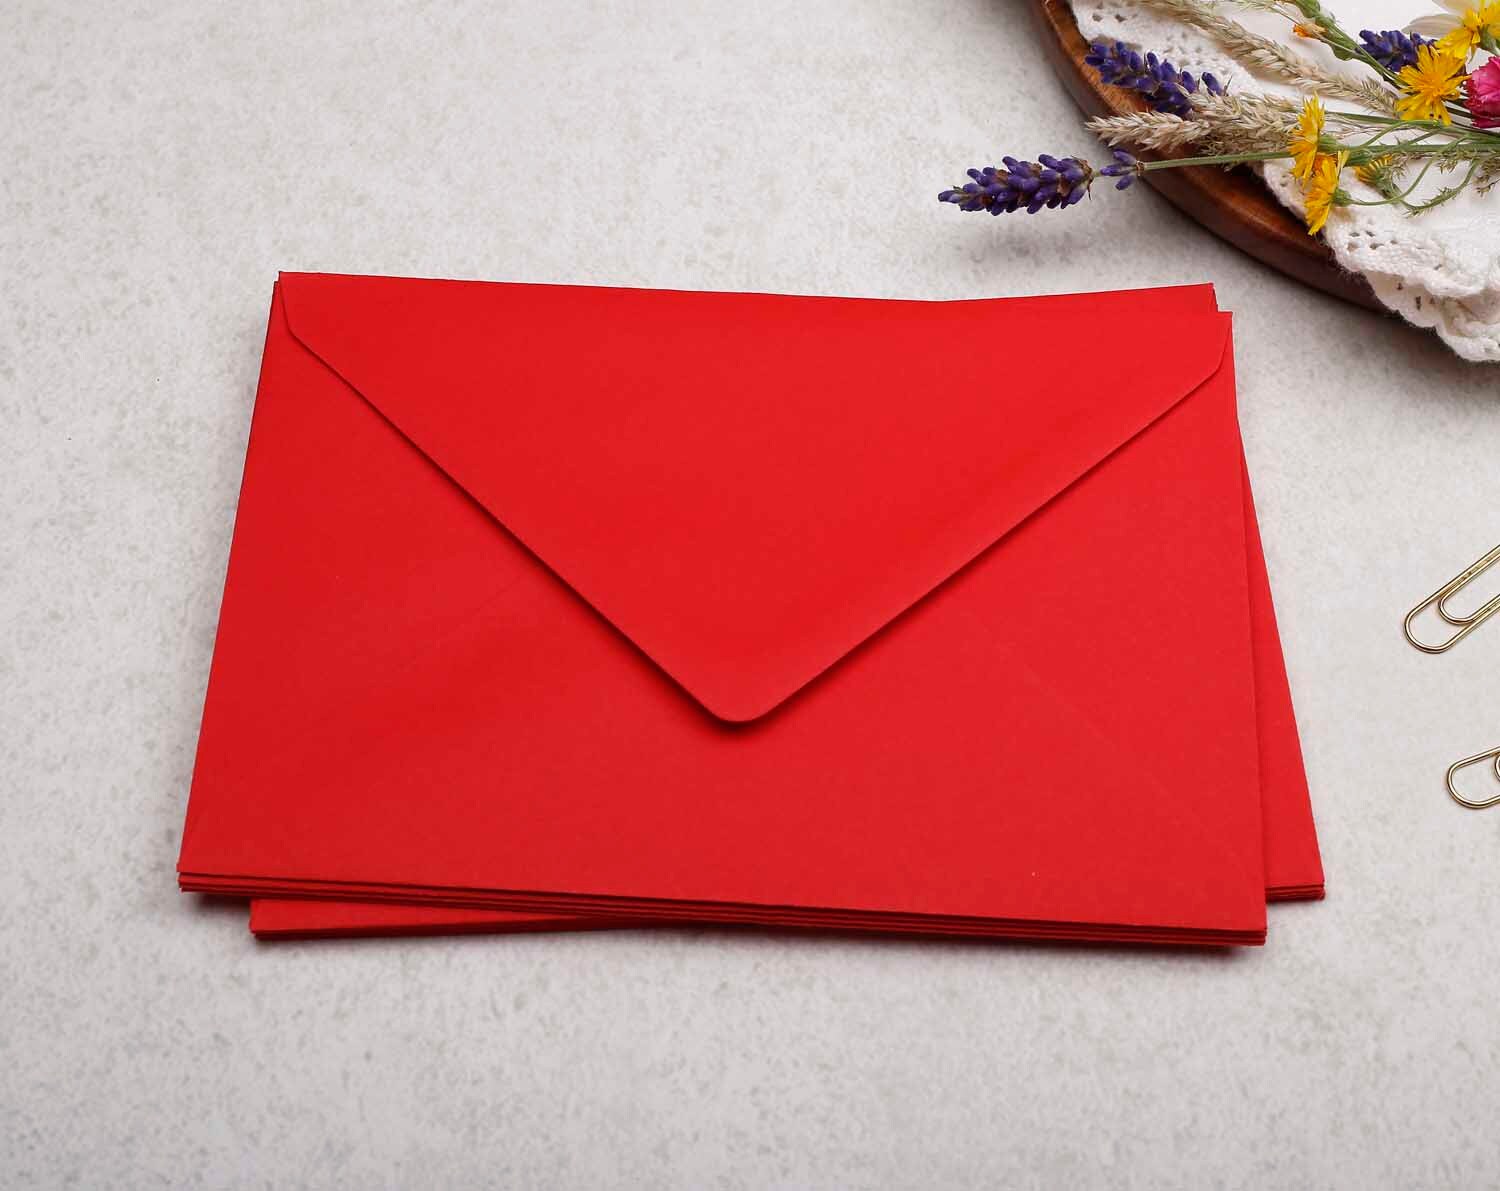 125 x 175mm Red Envelopes